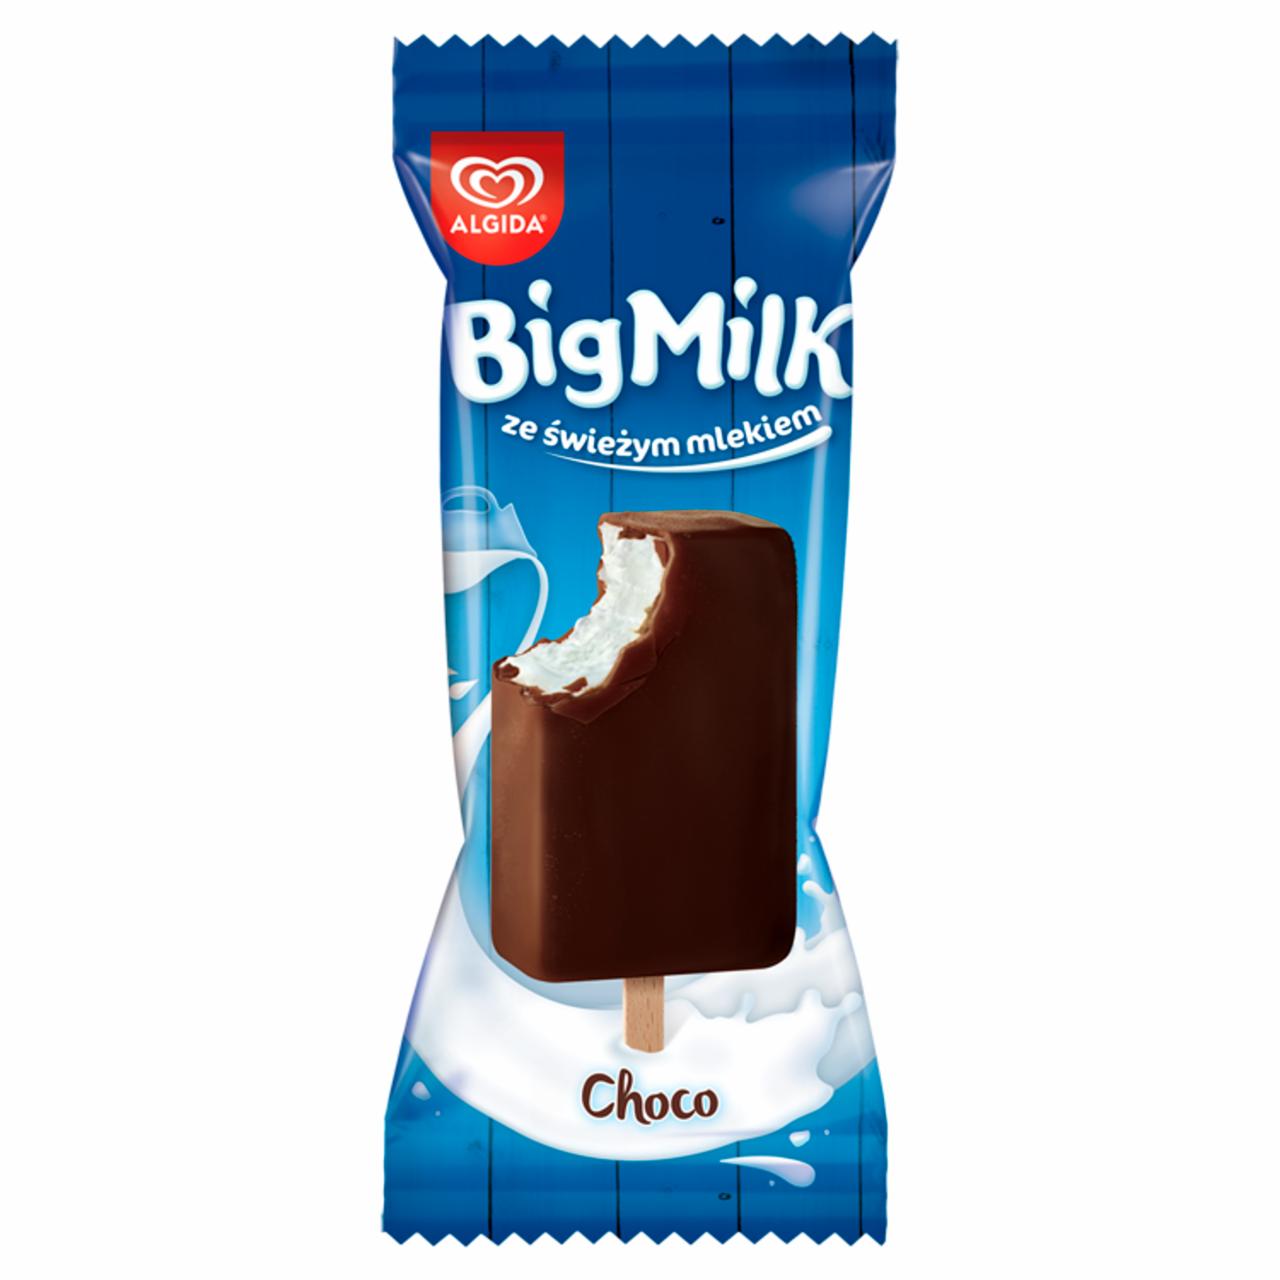 Zdjęcia - Big Milk Choco Lody 100 ml